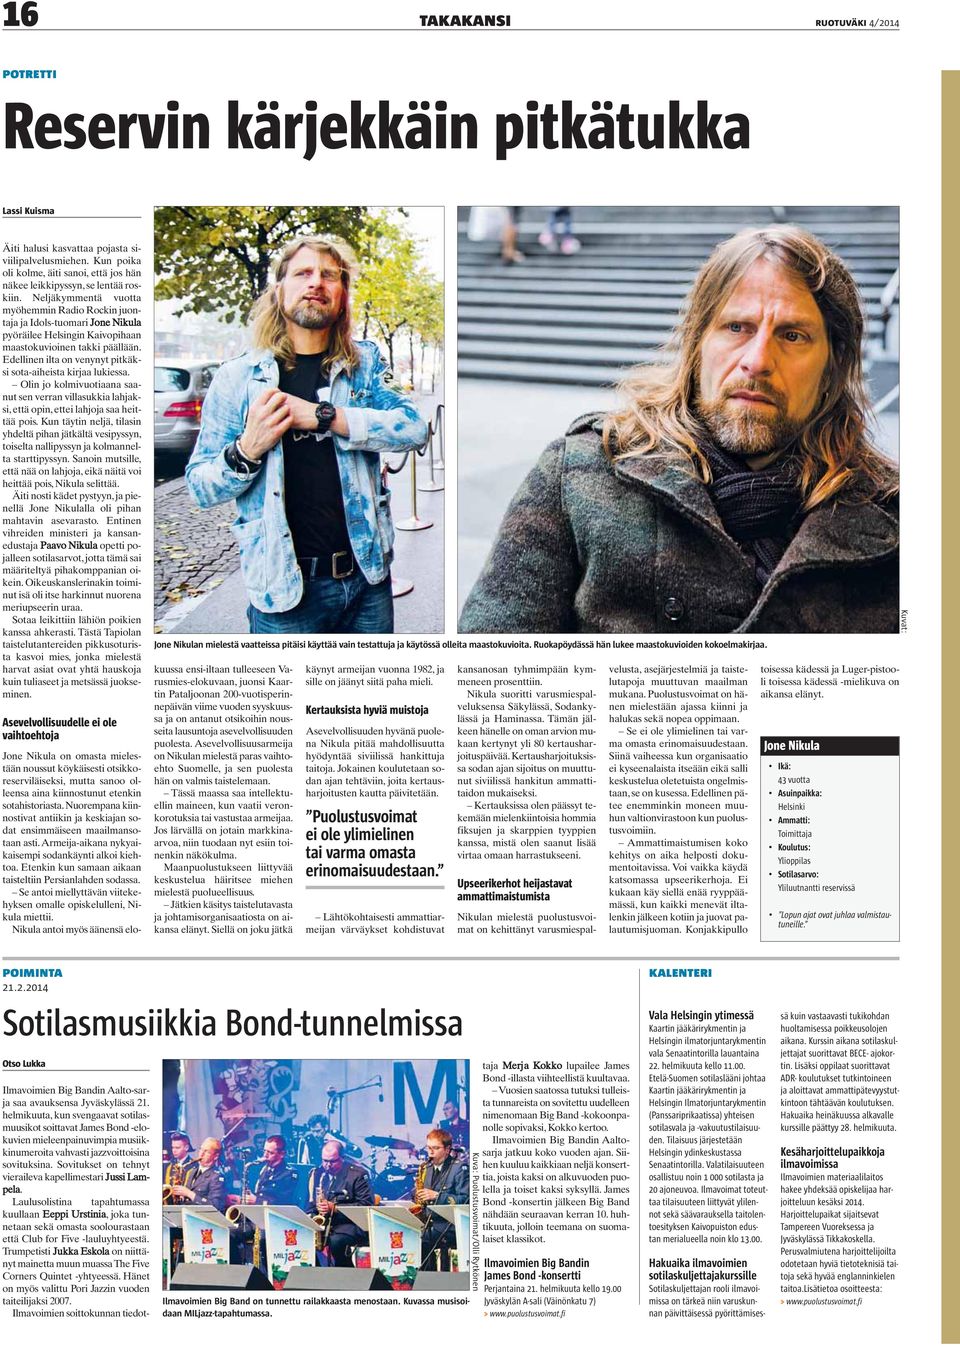 Neljäkymmentä vuotta myöhemmin Radio Rockin juontaja ja Idols-tuomari Jone Nikula pyöräilee Helsingin Kaivopihaan maastokuvioinen takki päällään.